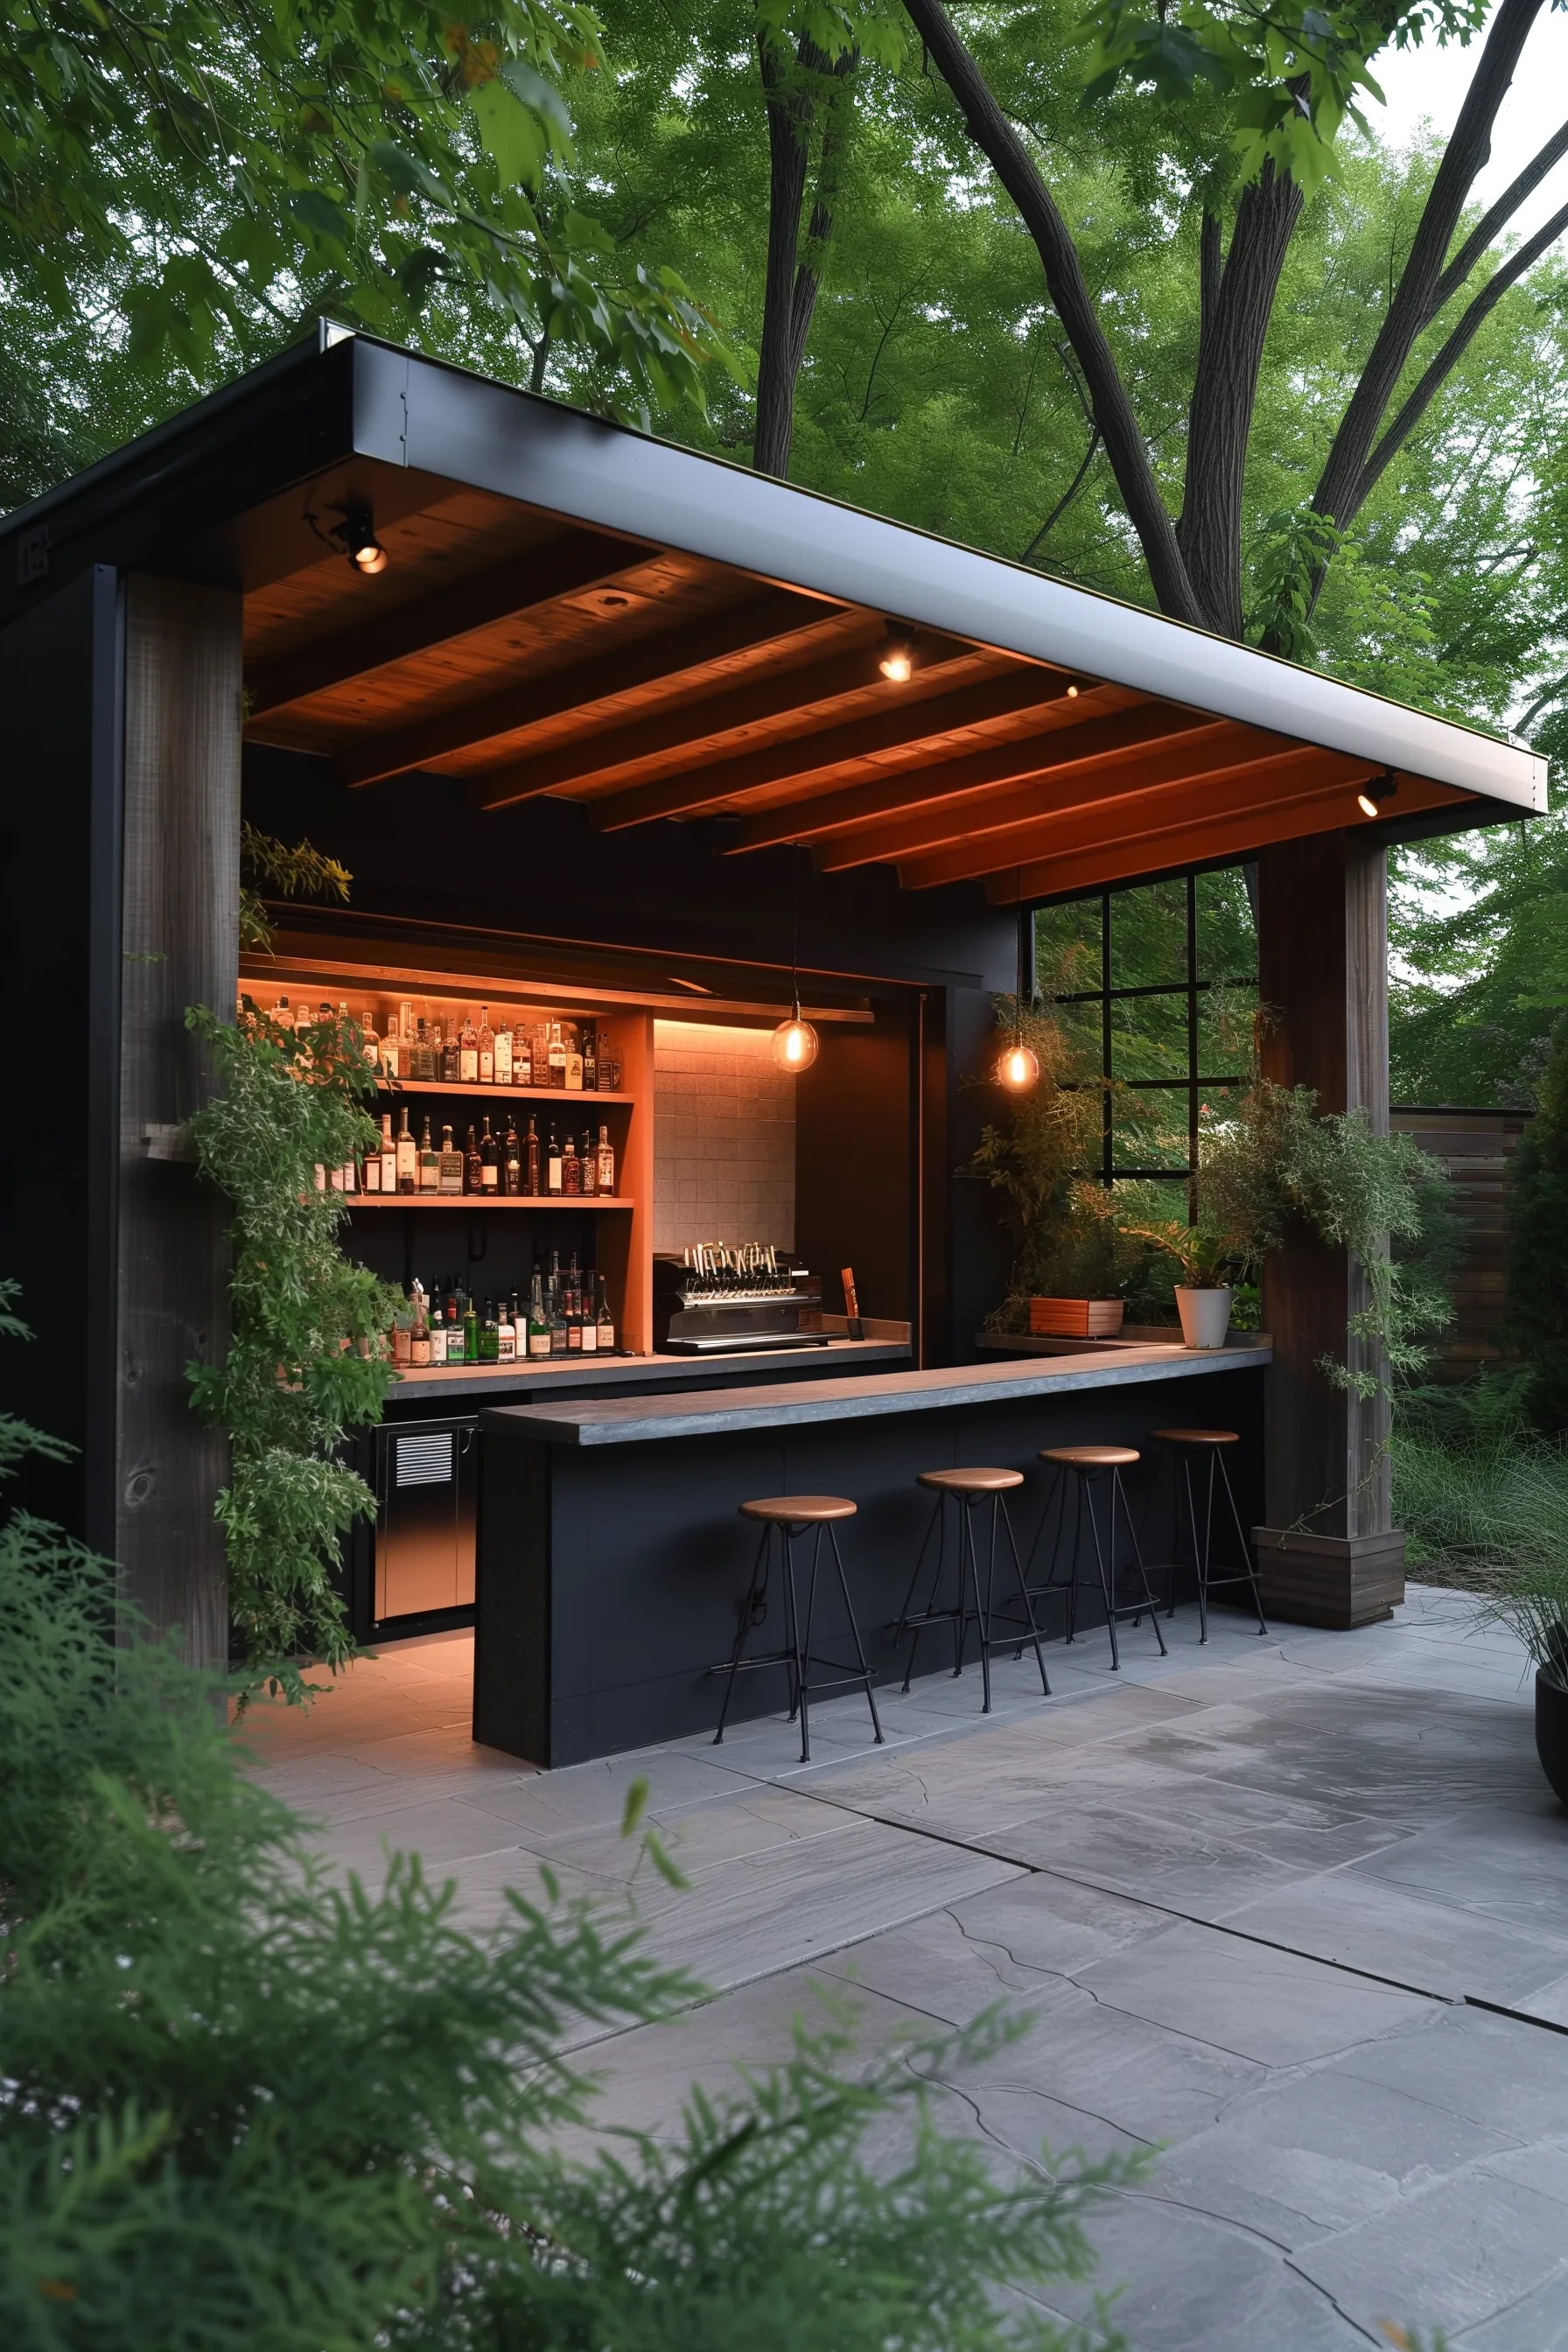 An outdoor bar